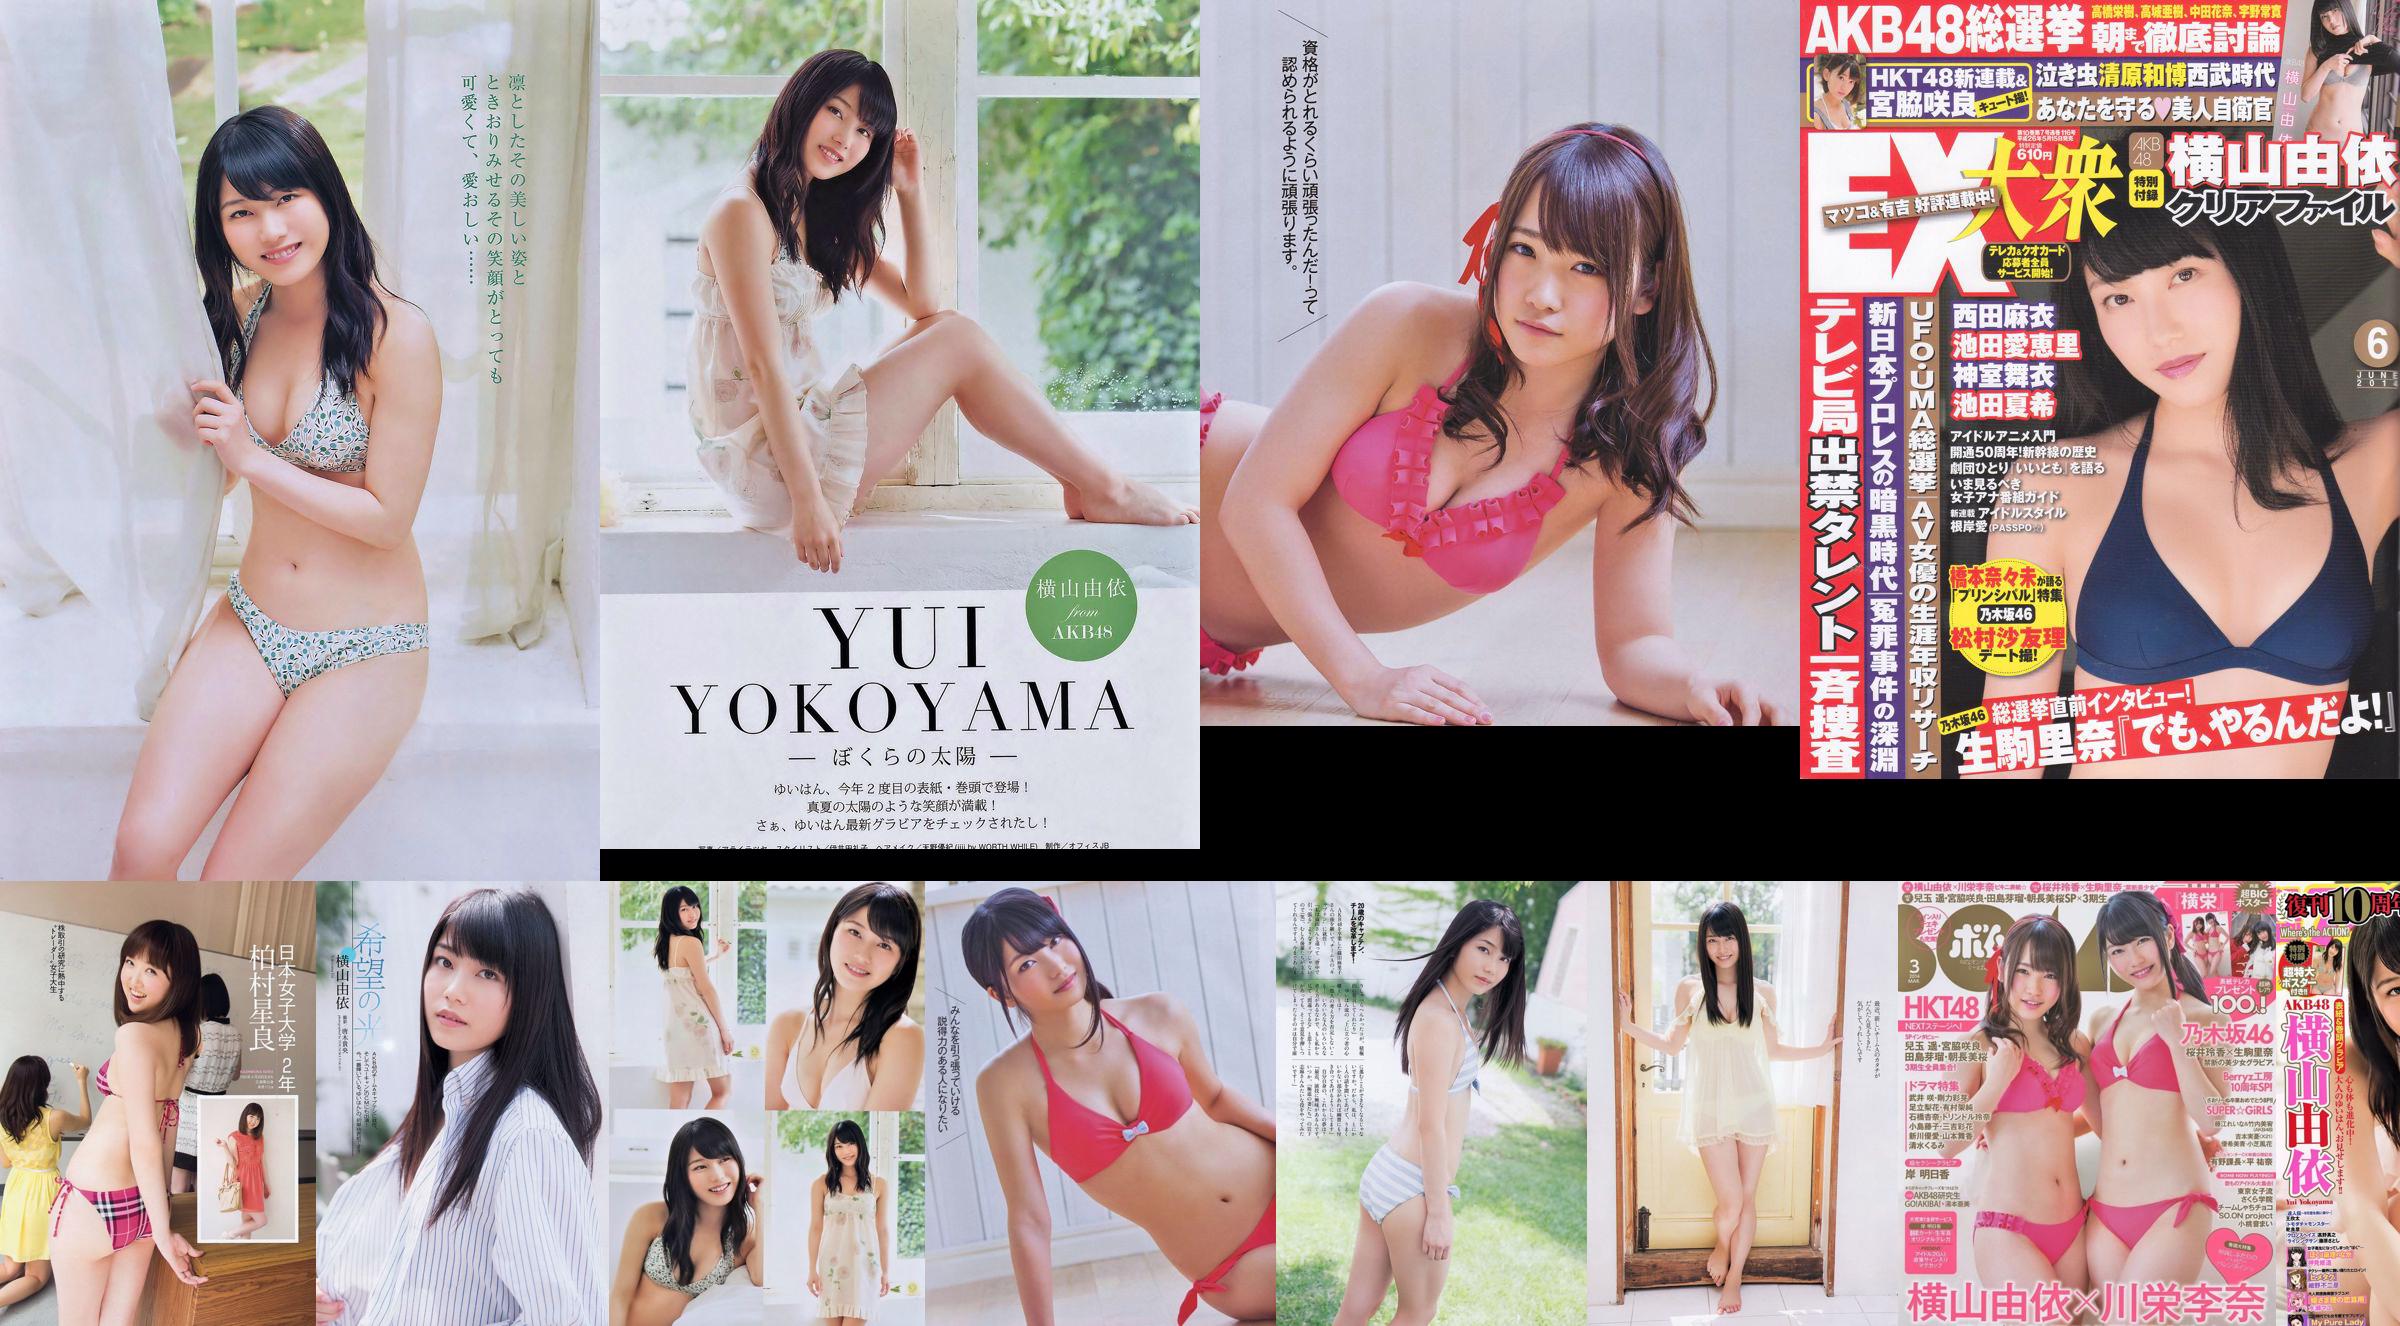 [Bomb Magazine] 2014 No.03 Yui Yokoyama Rina Kawaei Photograph No.14c7db Page 2